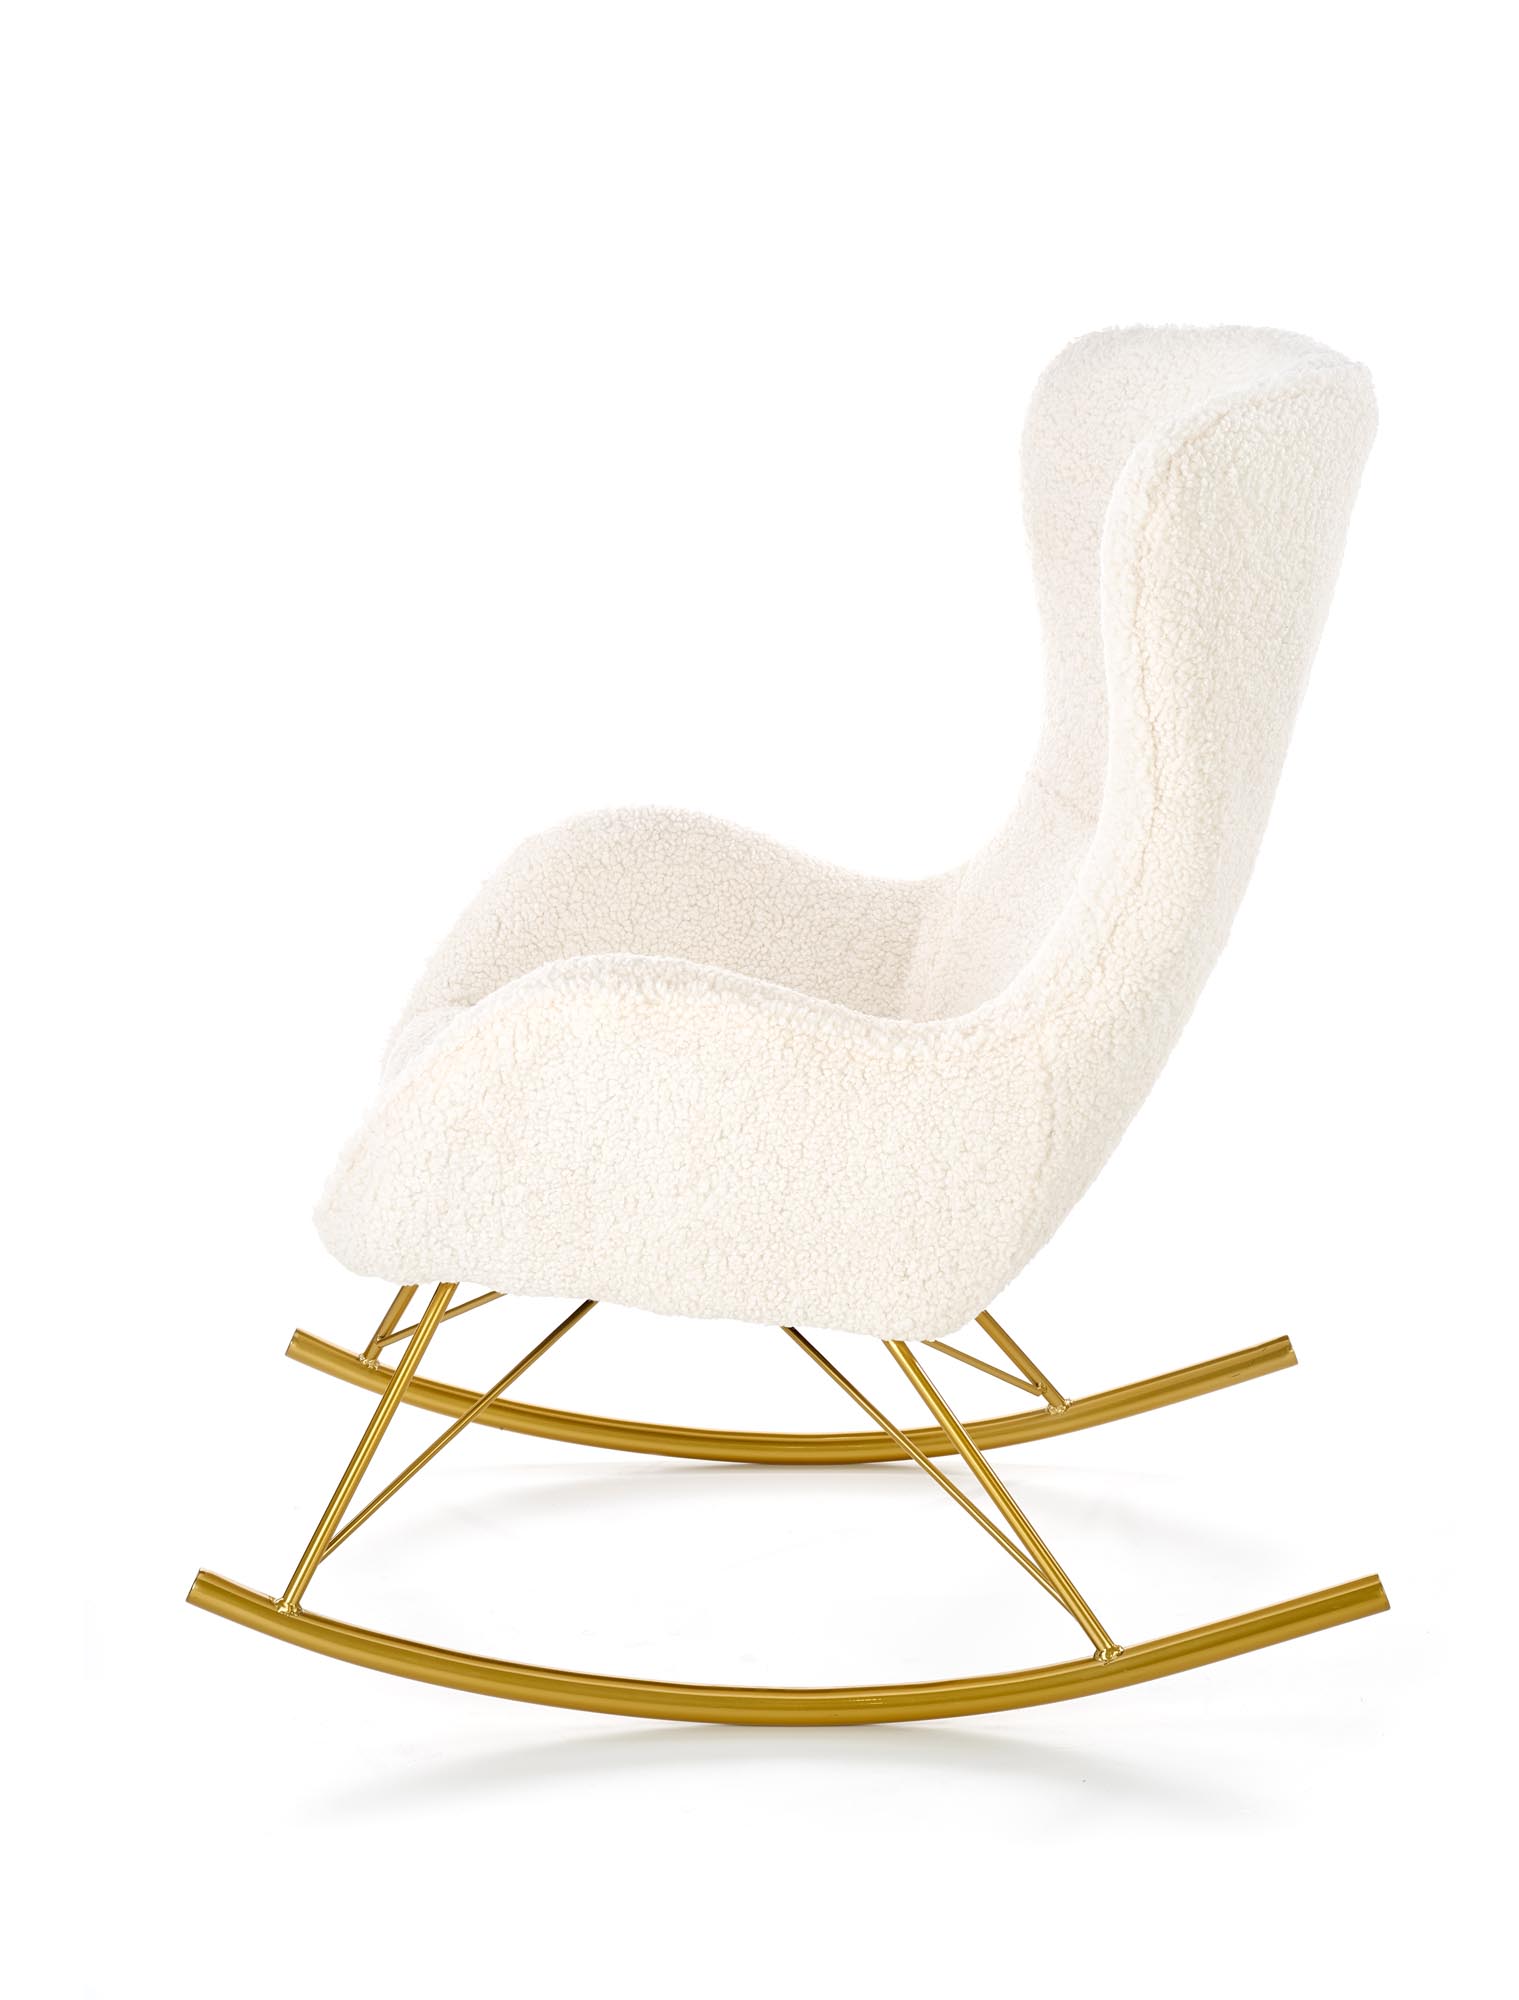 LIBERTO fotel wypoczynkowy kremowy / złoty liberto fotel wypoczynkowy kremowy / złoty